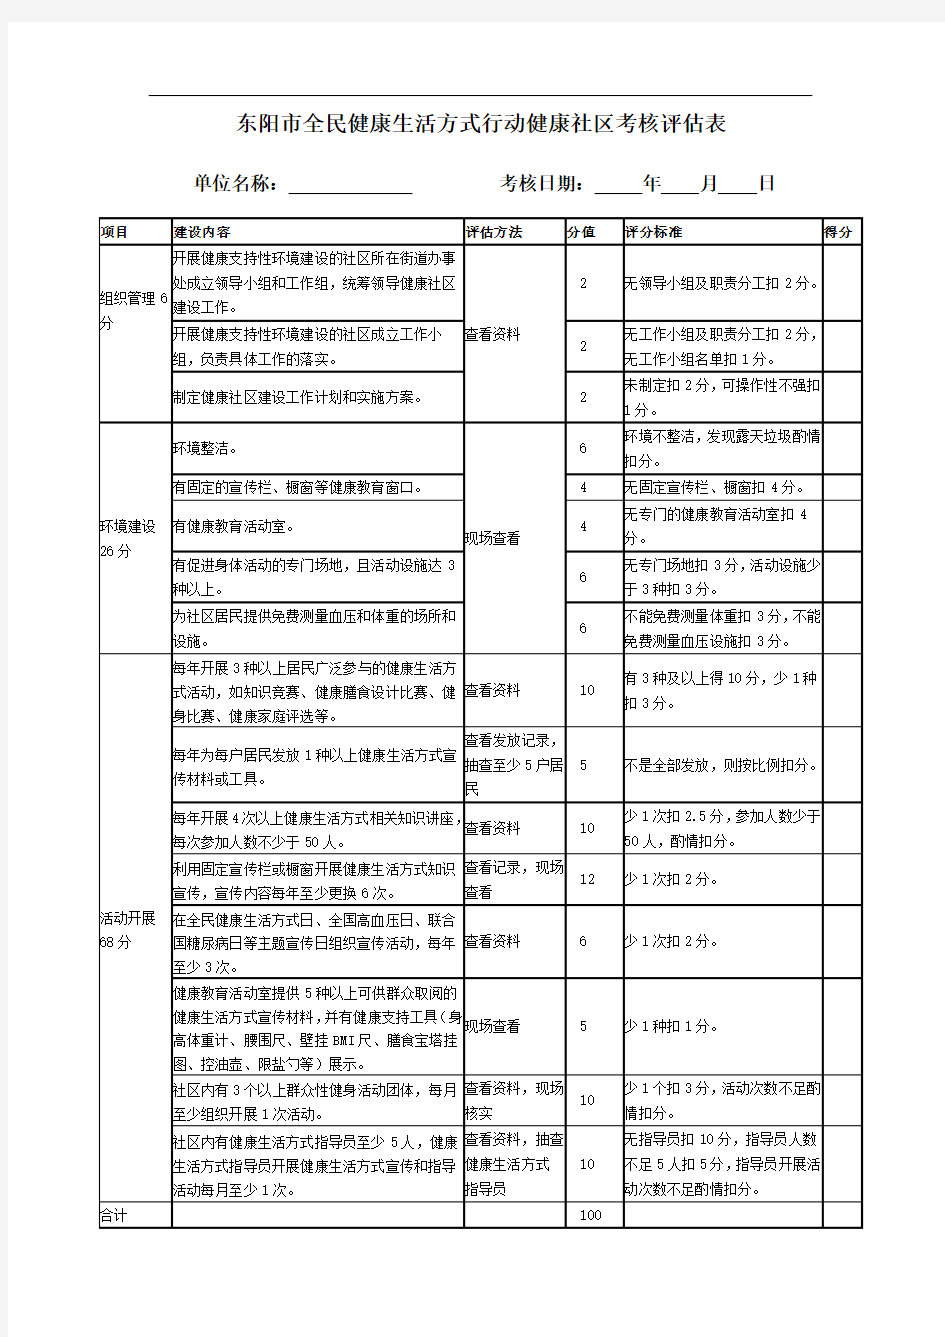 1东阳市健康支持性环境考核评估表(全部)